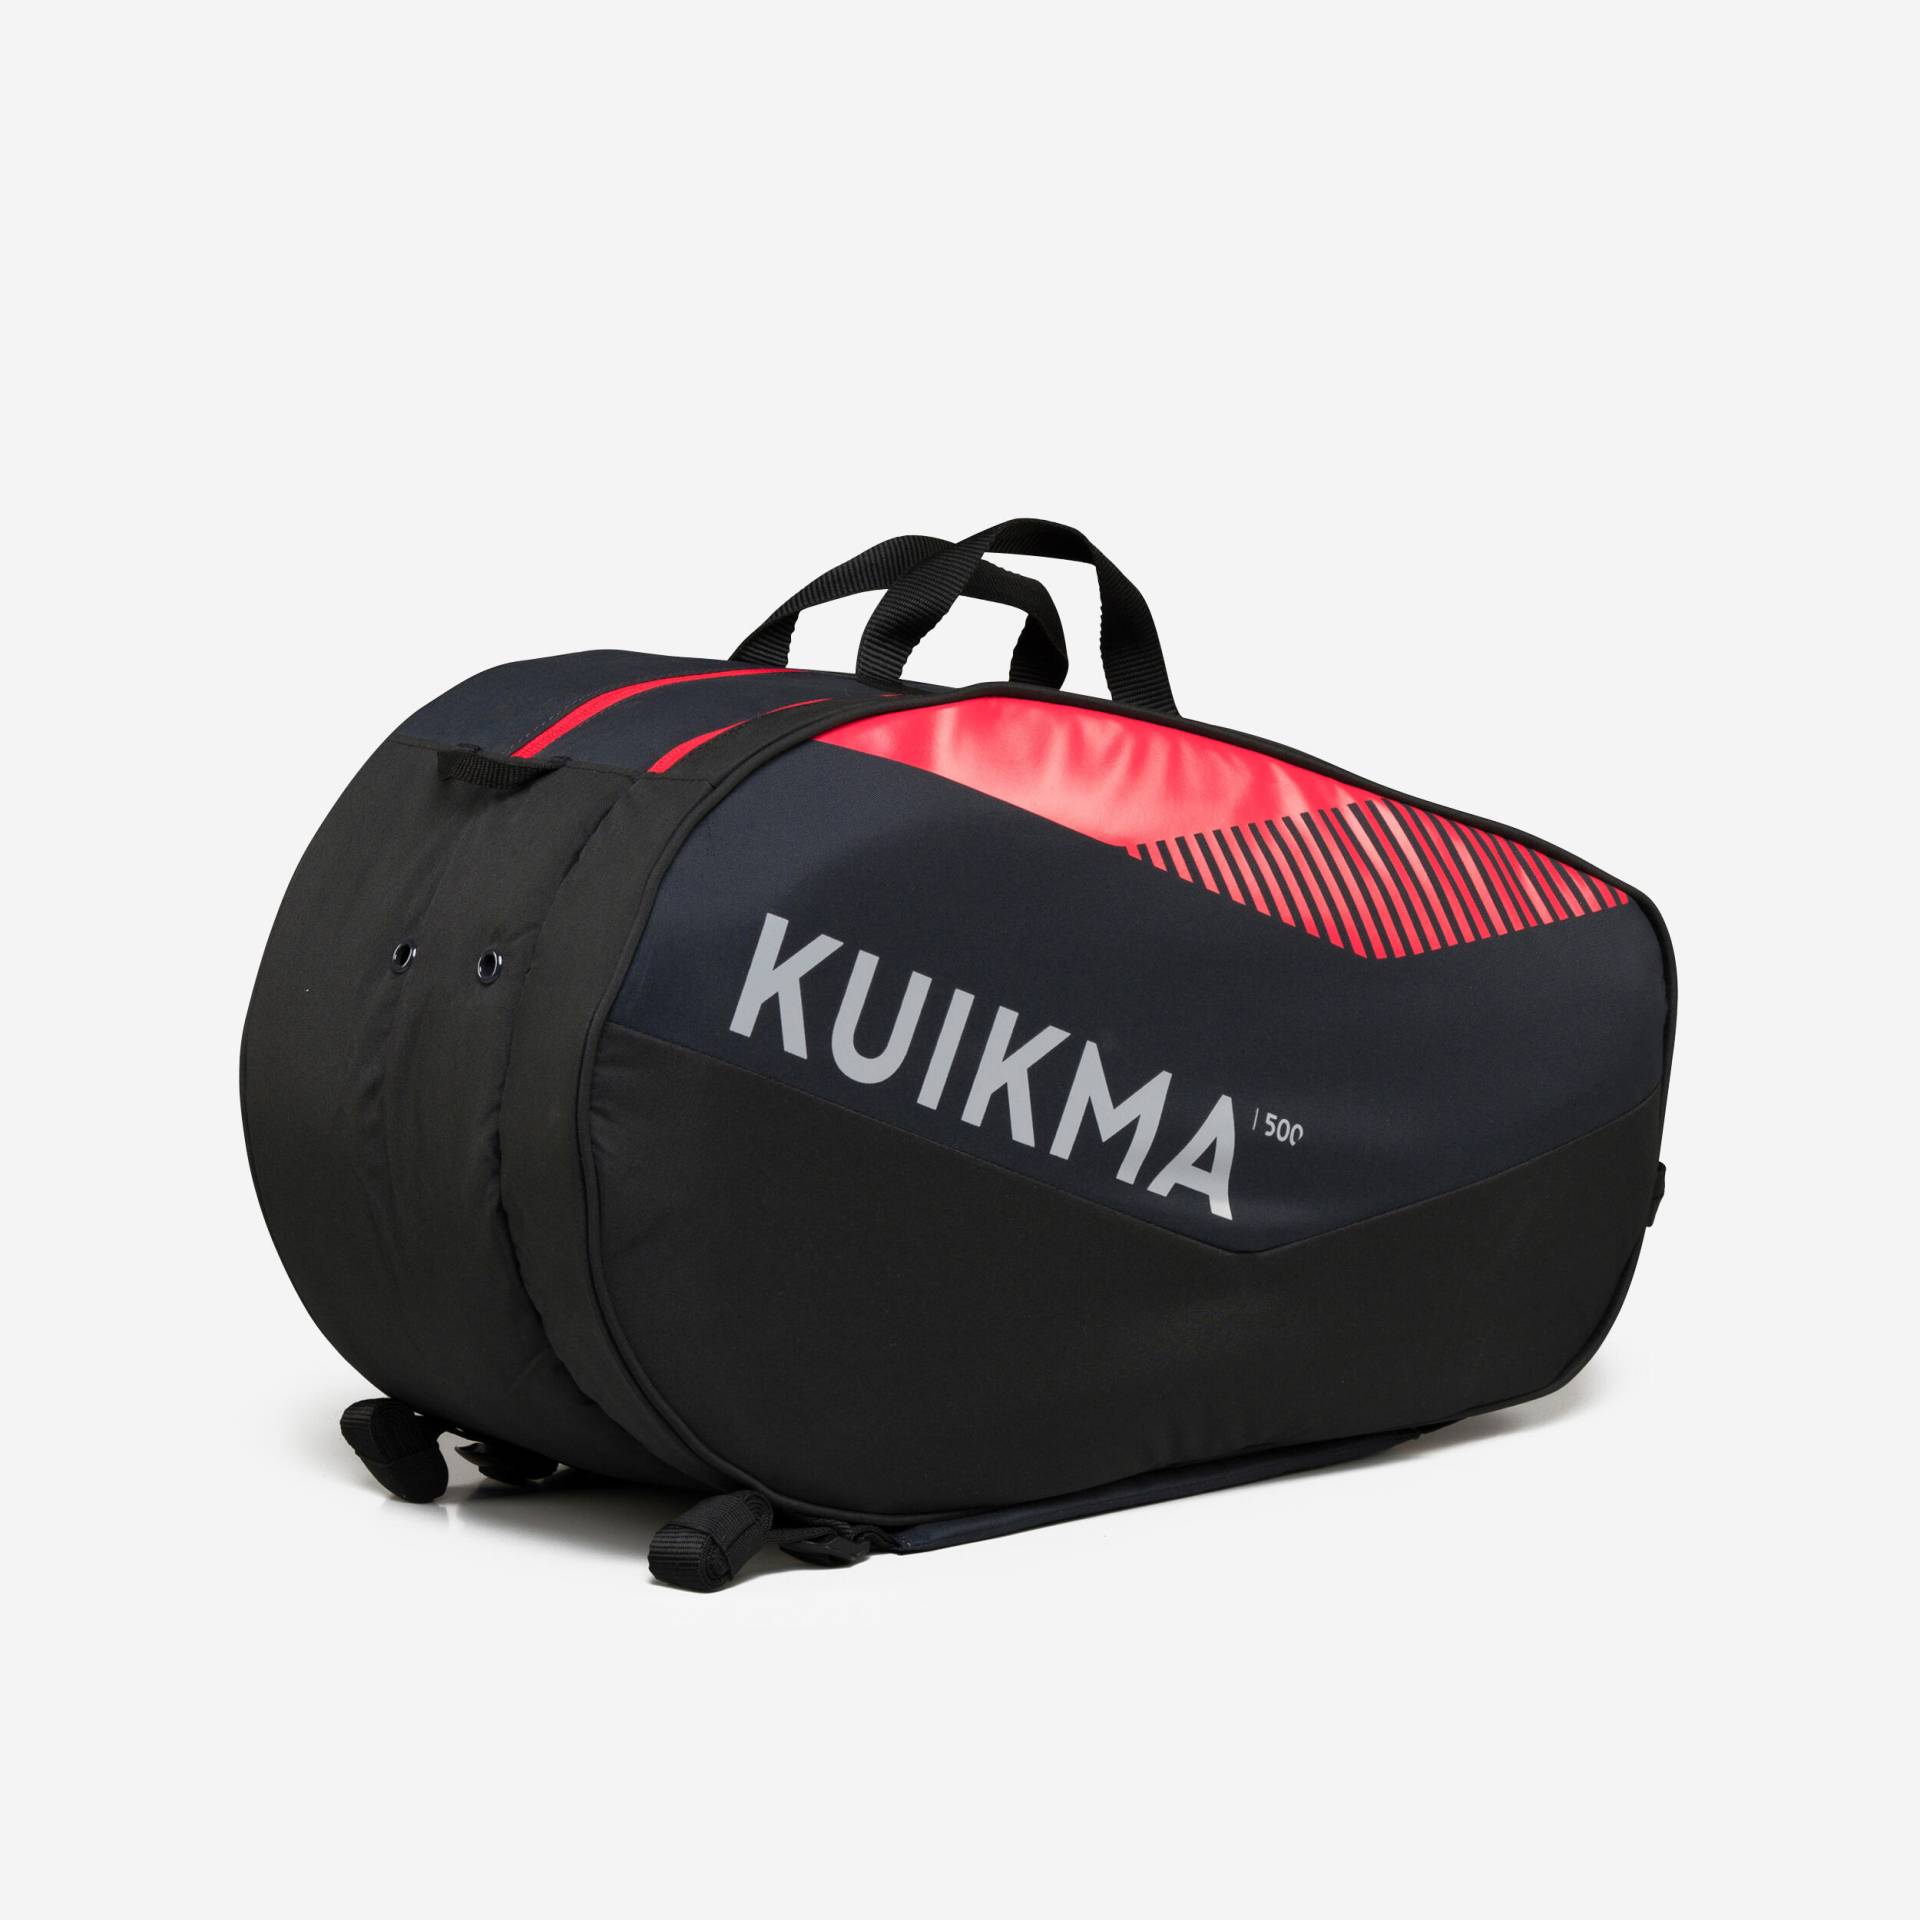 Padeltasche 20 l – Kuikma PL 500 schwarz/rot von KUIKMA